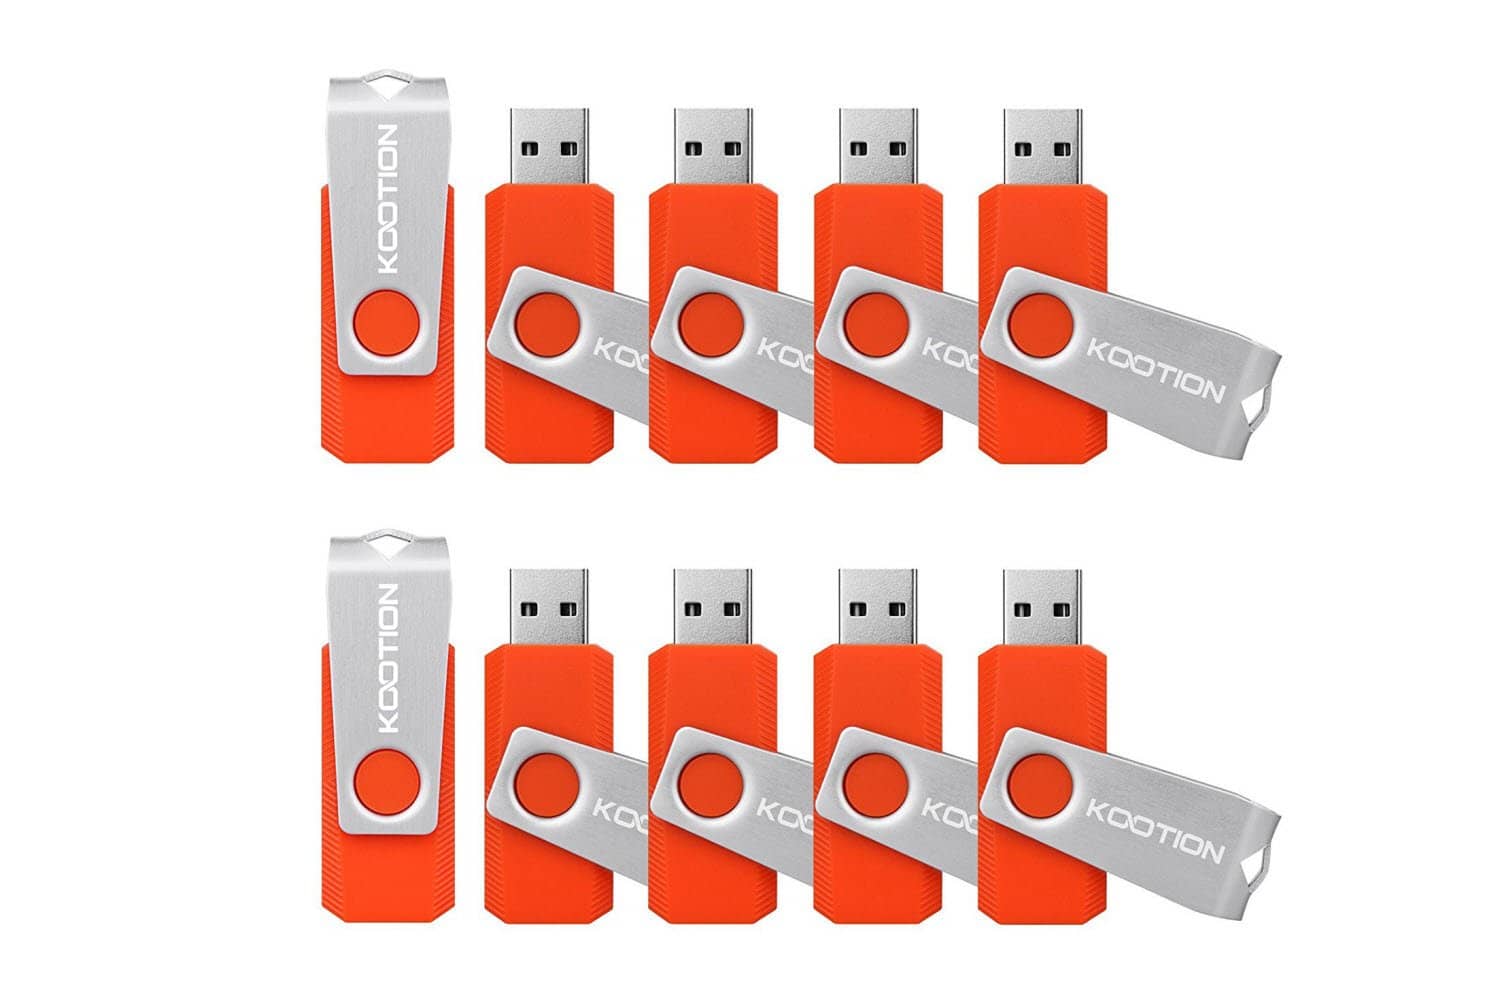 KOOTION 16PCS 4GB USB Flash Drive - Orange